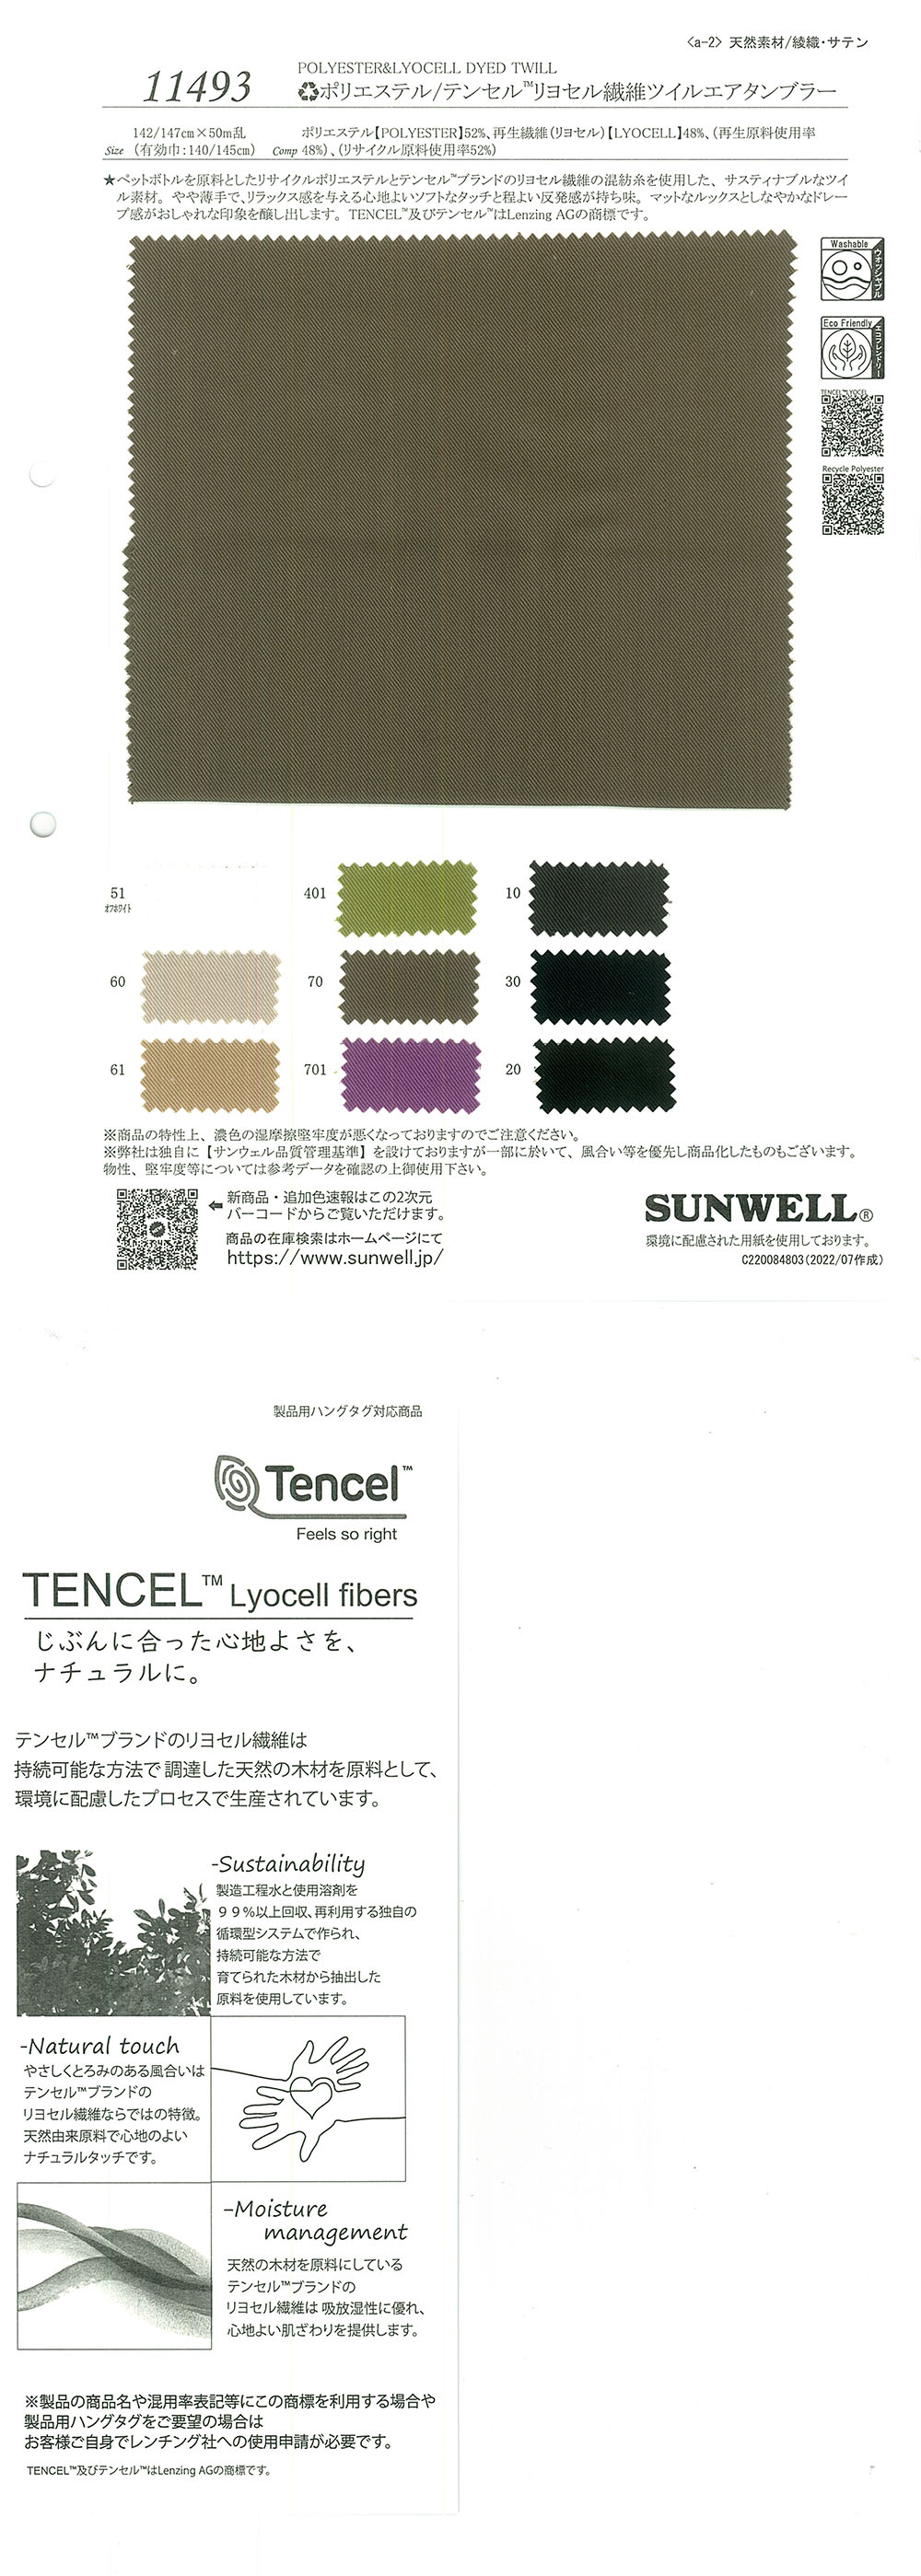 11493 (リ)ポリエステル/テンセル(TM)リヨセル繊維ツイルエアタンブラー[生地] SUNWELL(サンウェル)